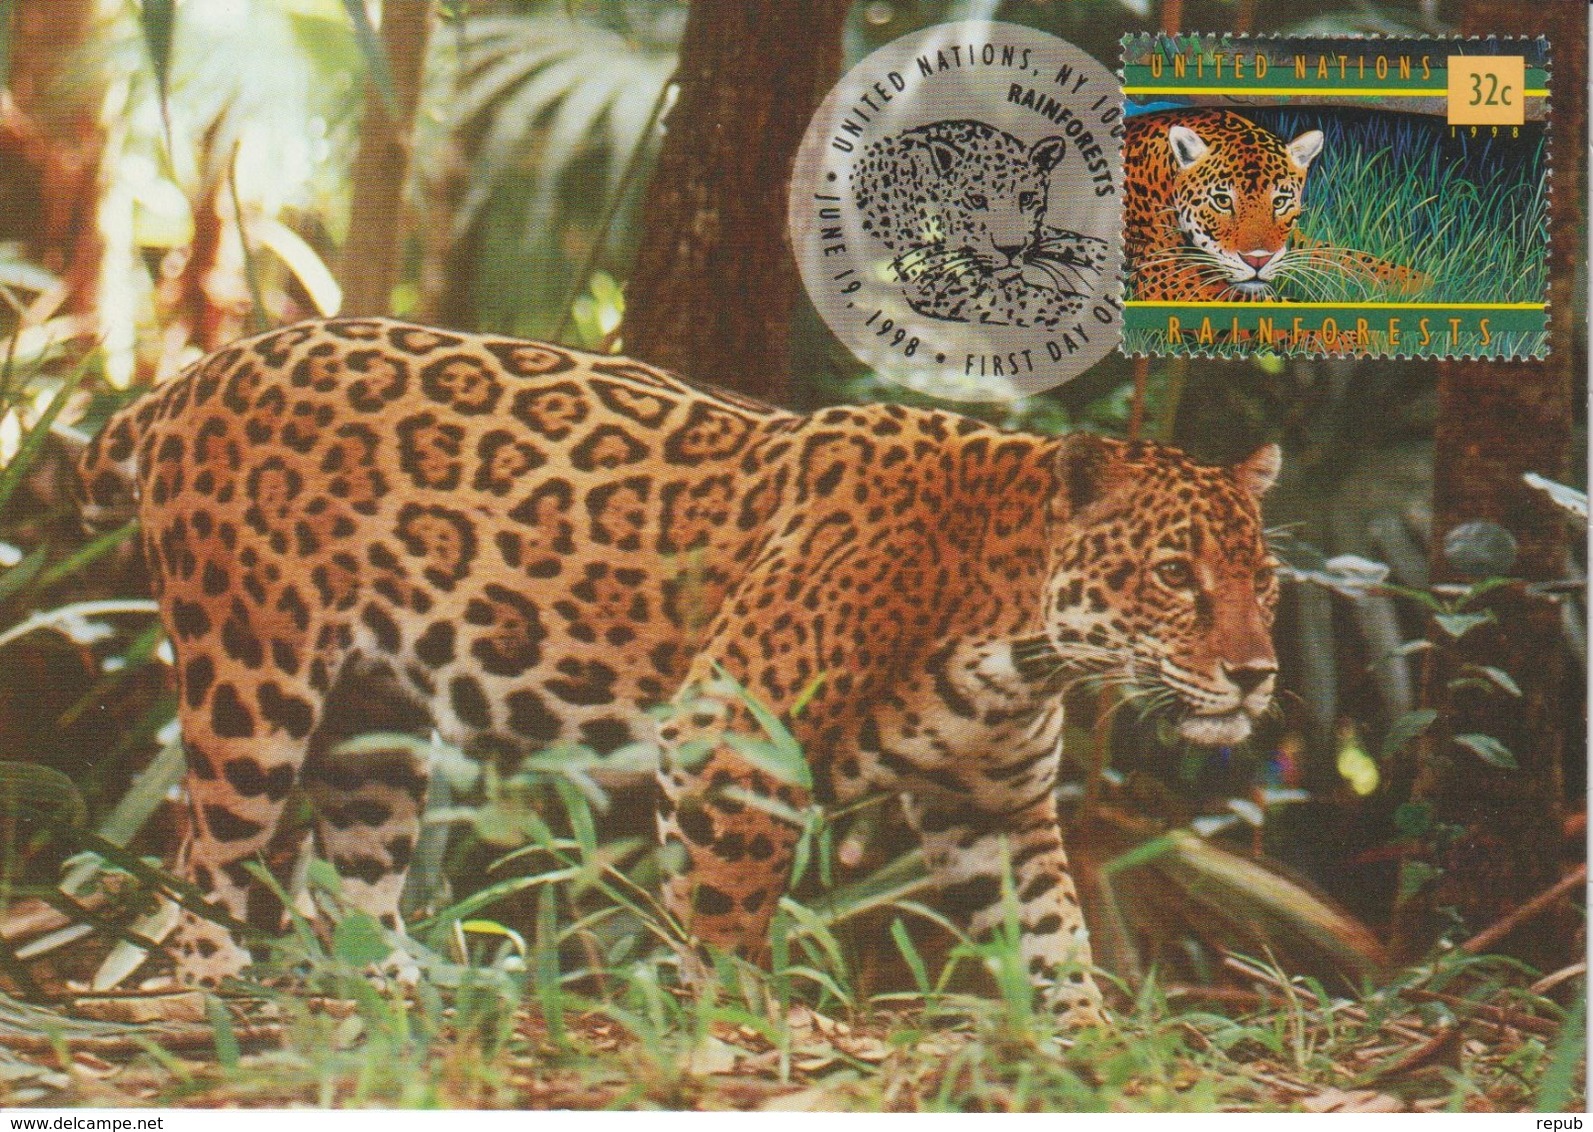 Nations Unies New York Carte Maximum 1998 Jaguar 770 - Maximumkaarten